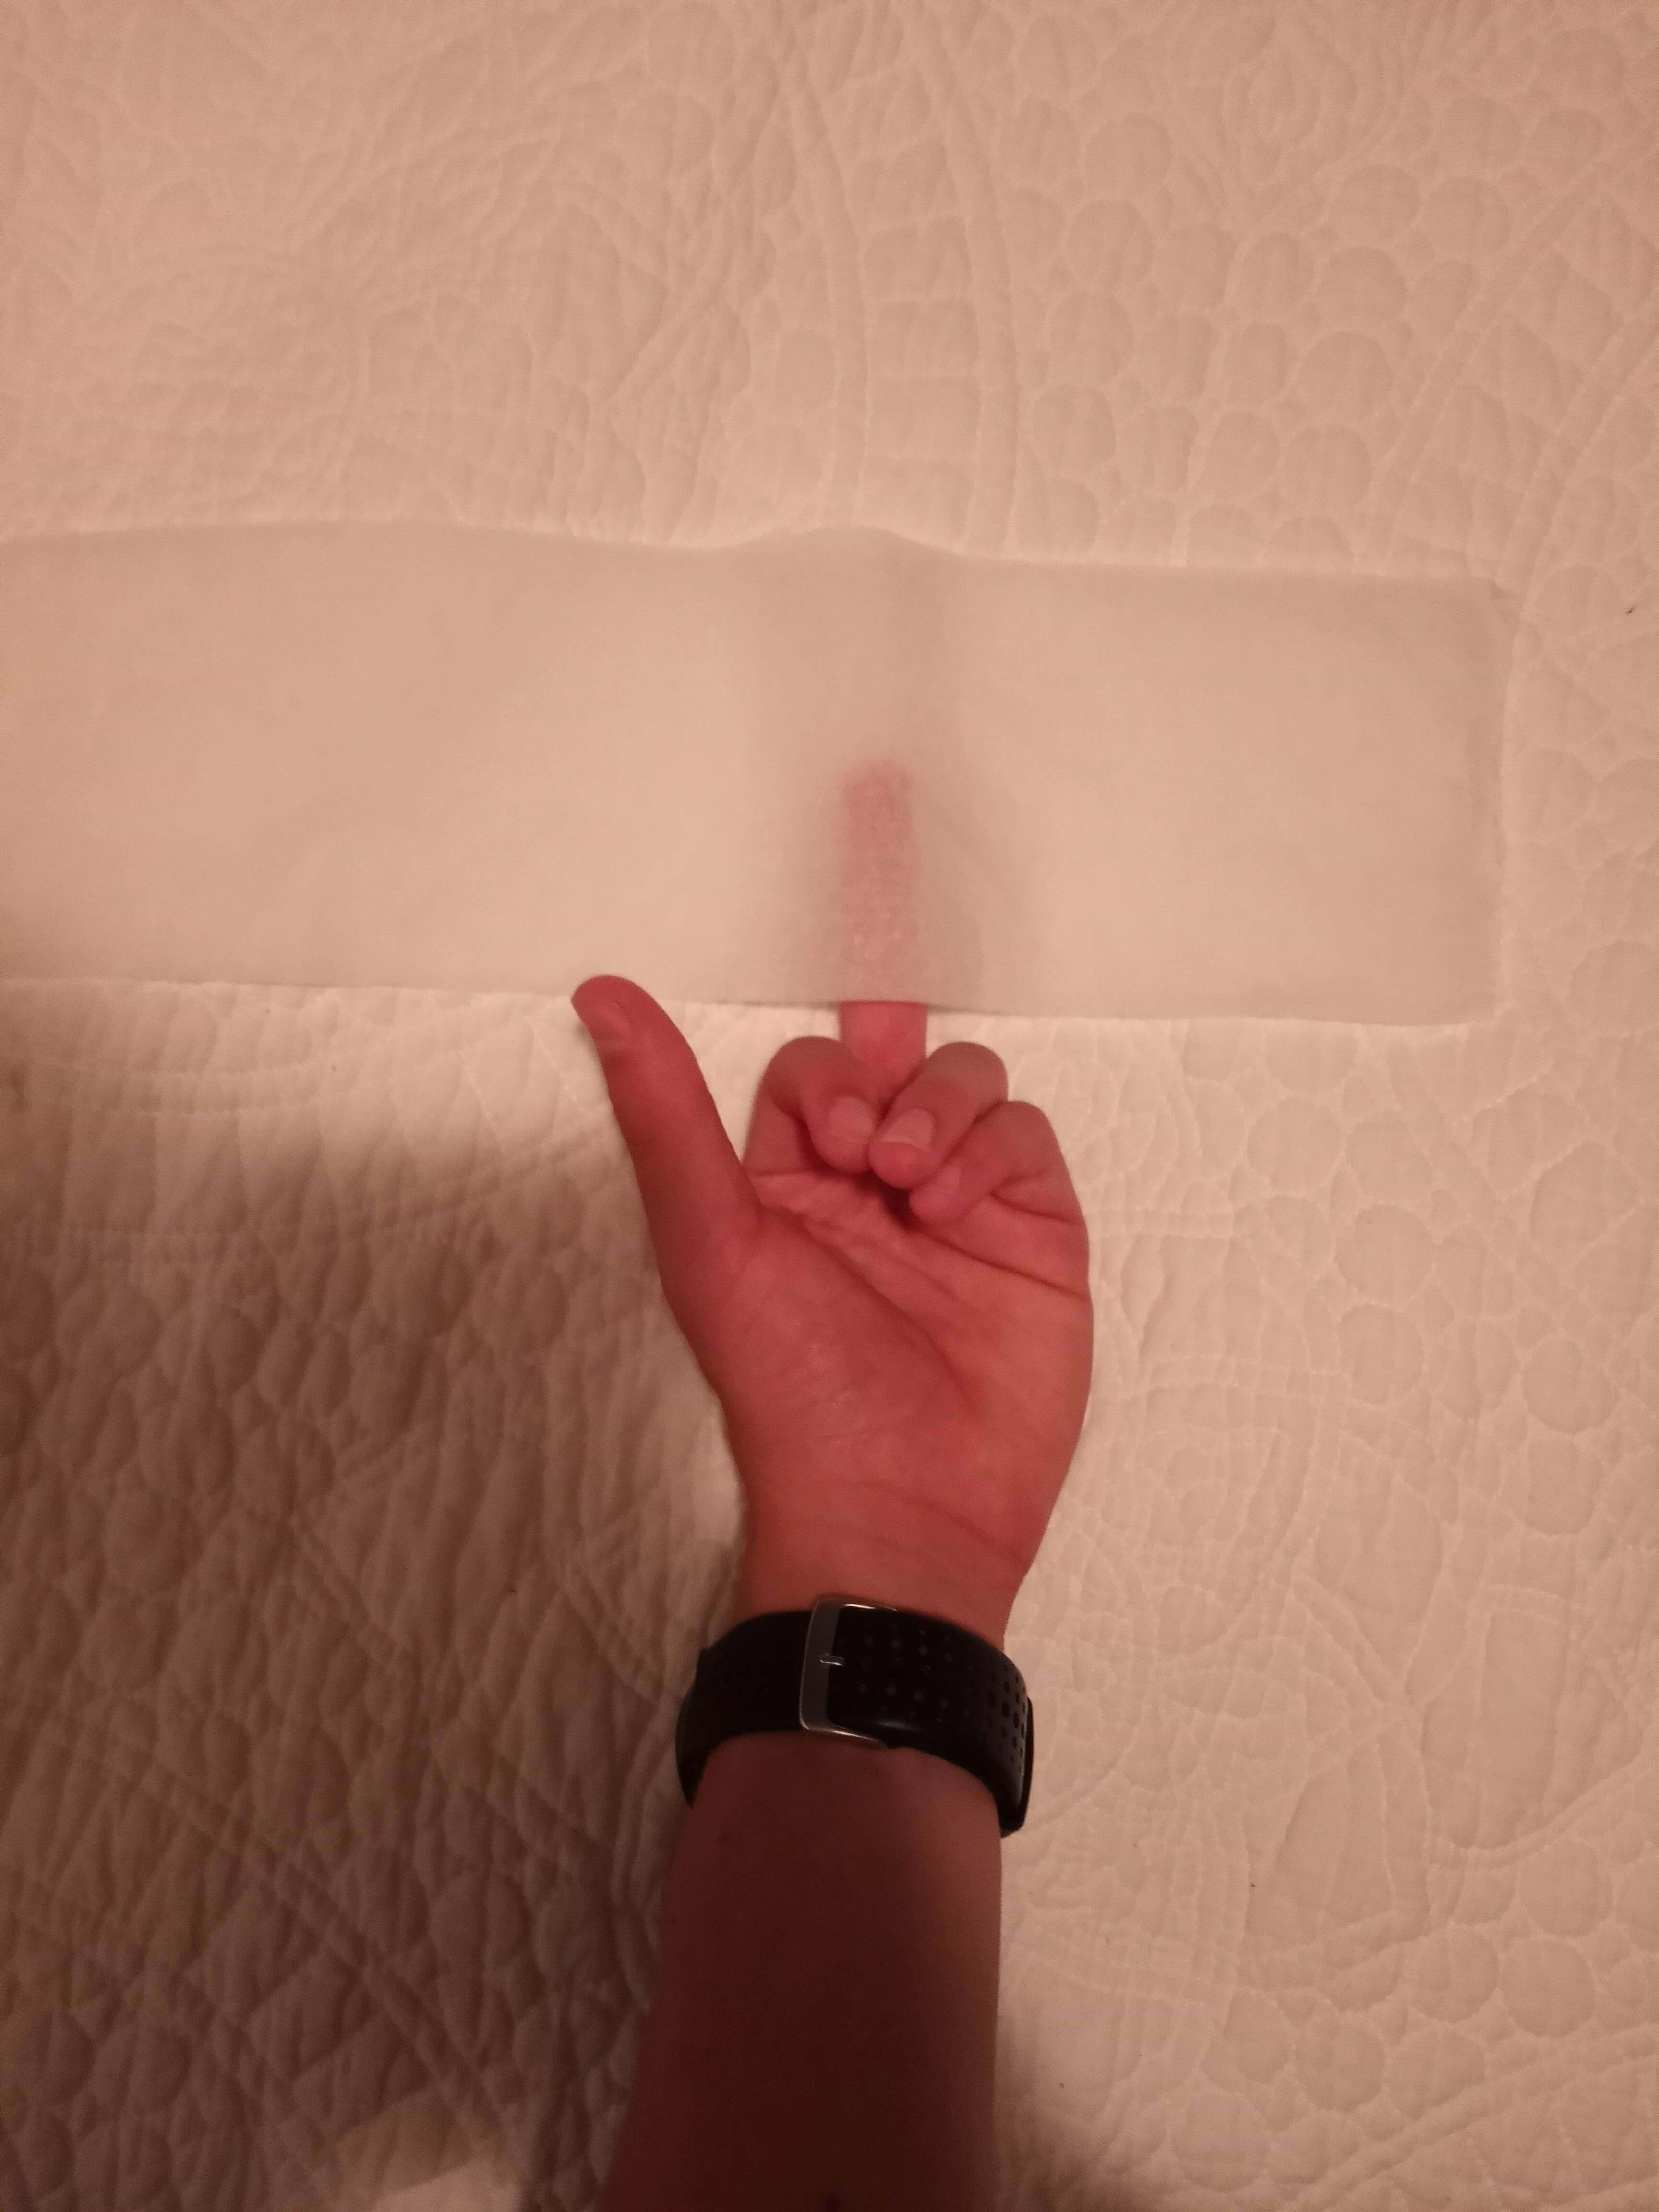 Le papier toilette le plus absurdement mince que j'ai jamais vu, trouvé dans mon Airbnb.